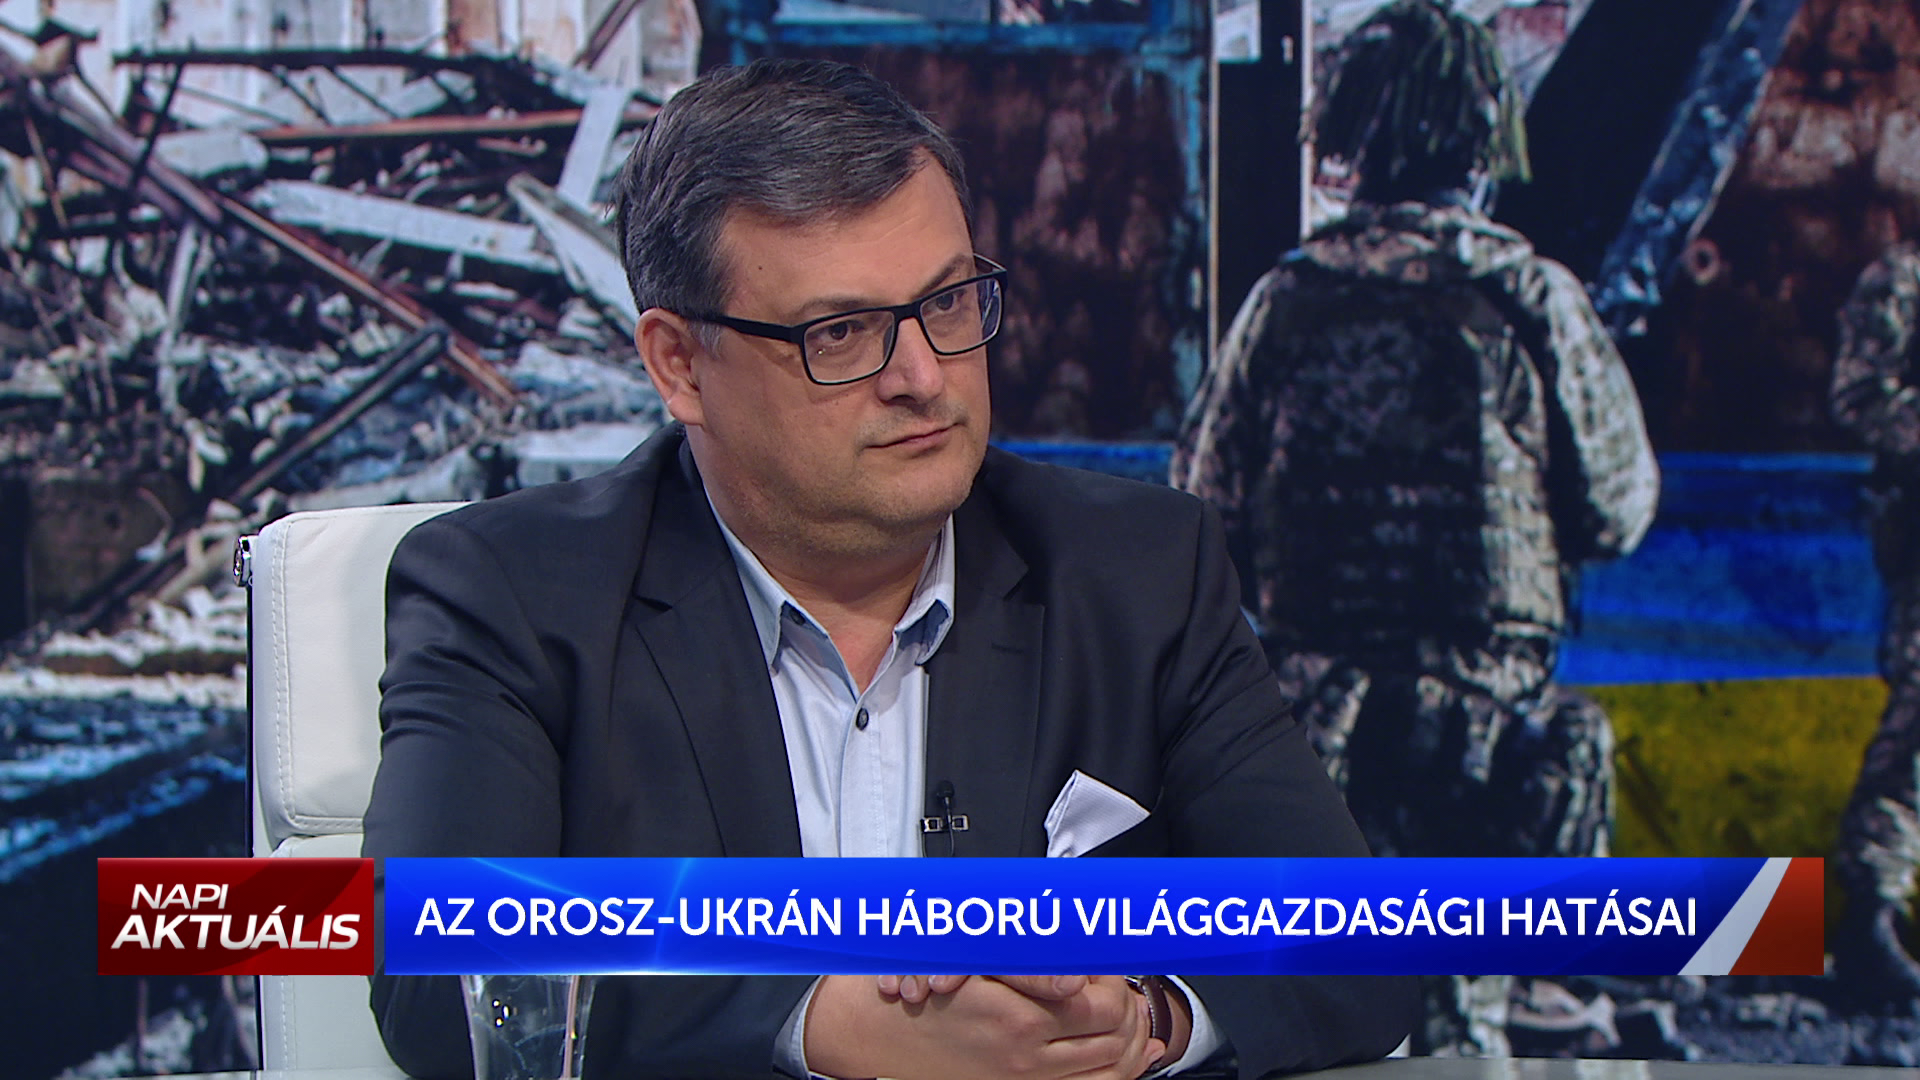 Szakáli István Loránd: Az európai autógyártásban is fennakadást okoz az orosz-ukrán háború